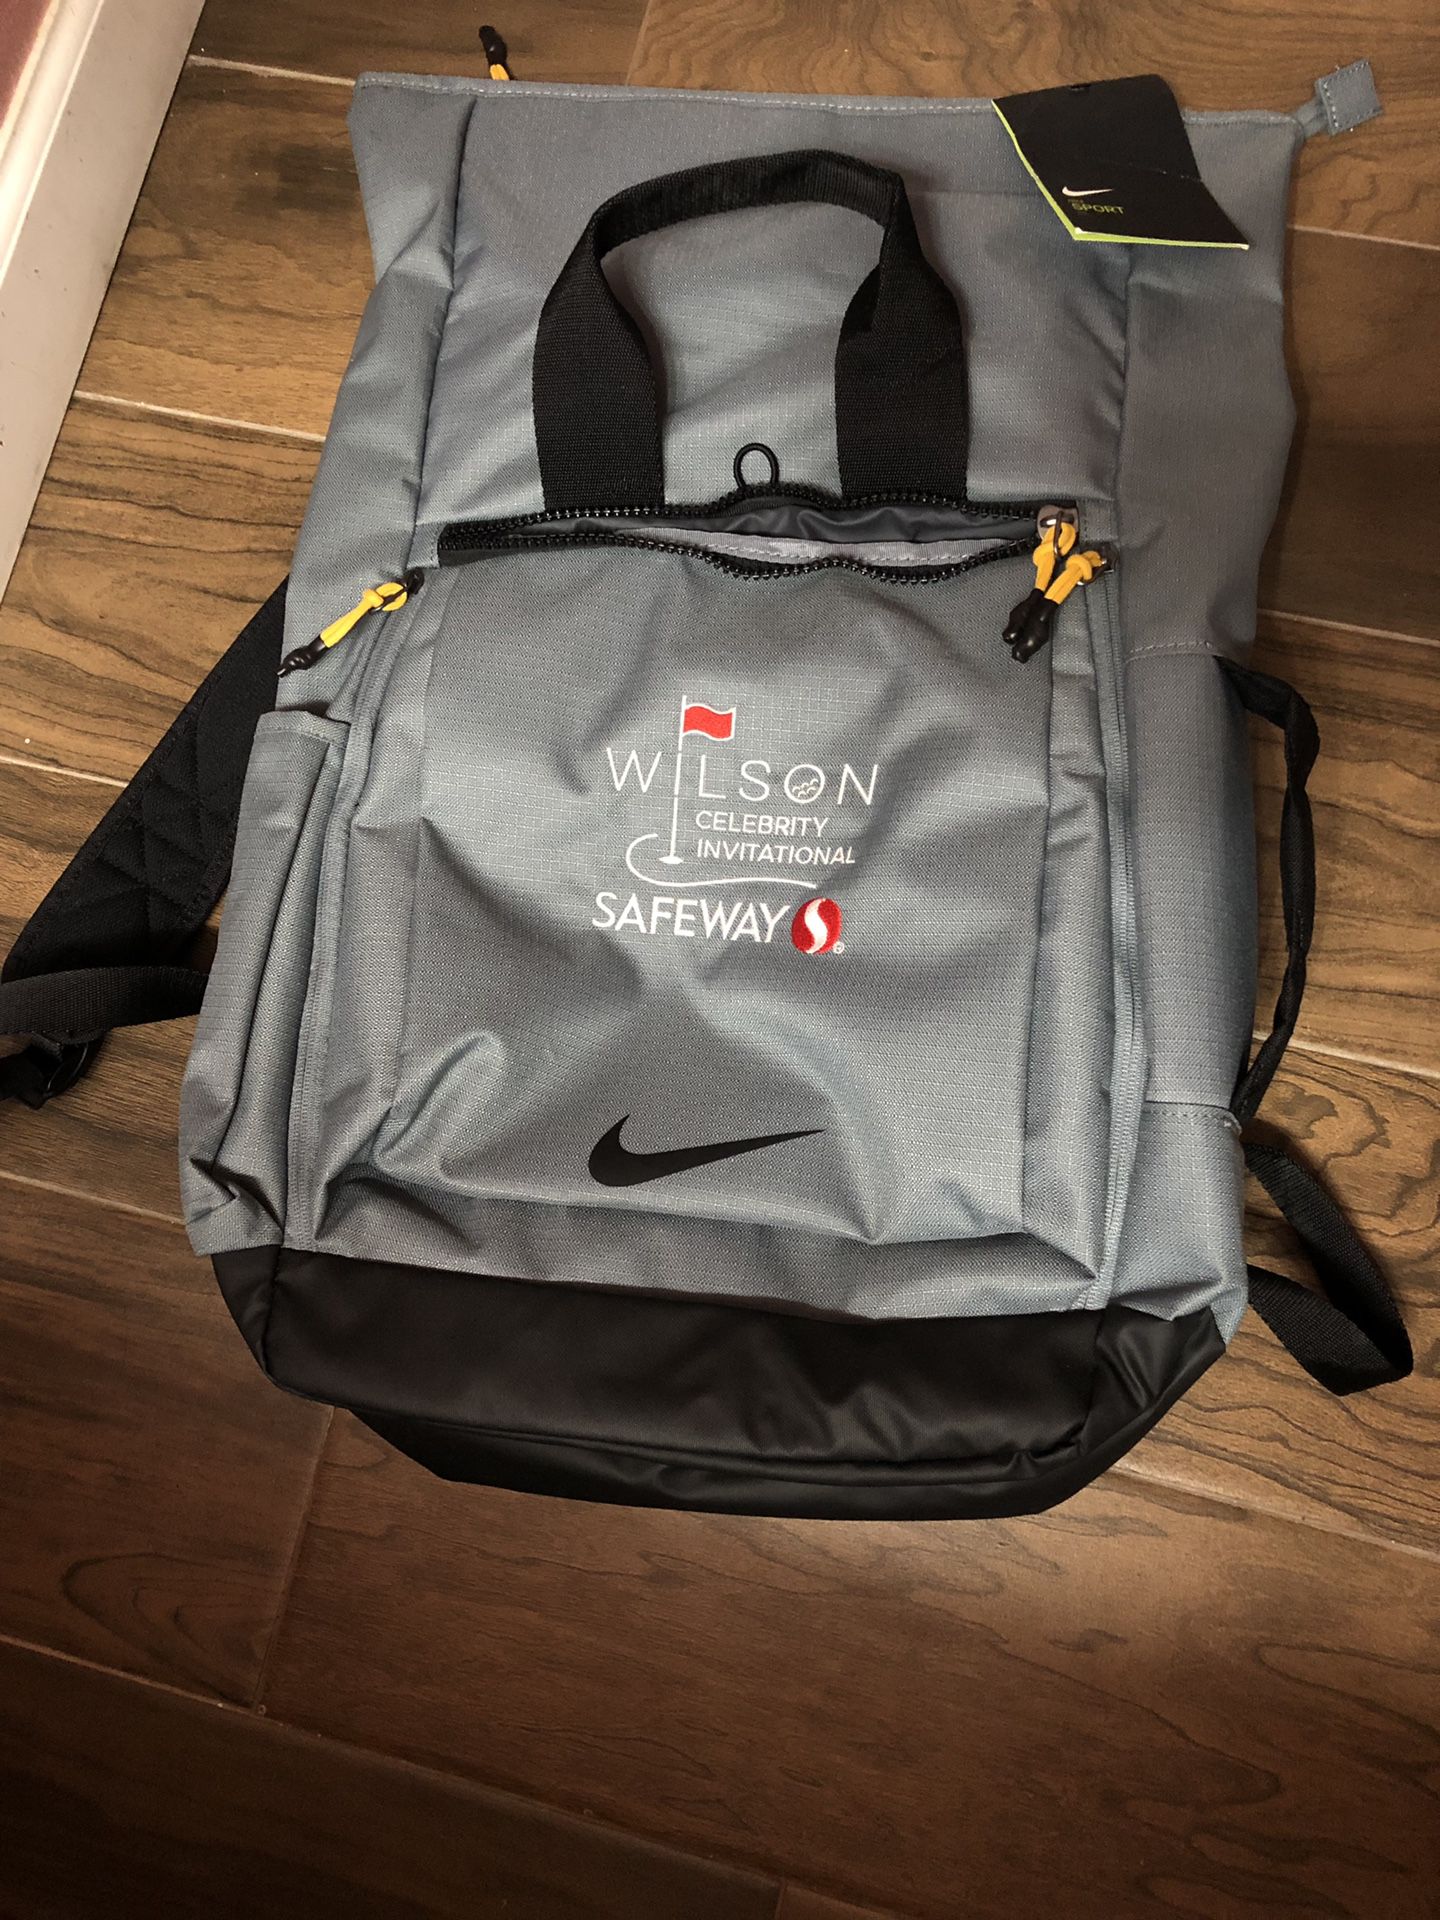 Brand new Nike Backpack